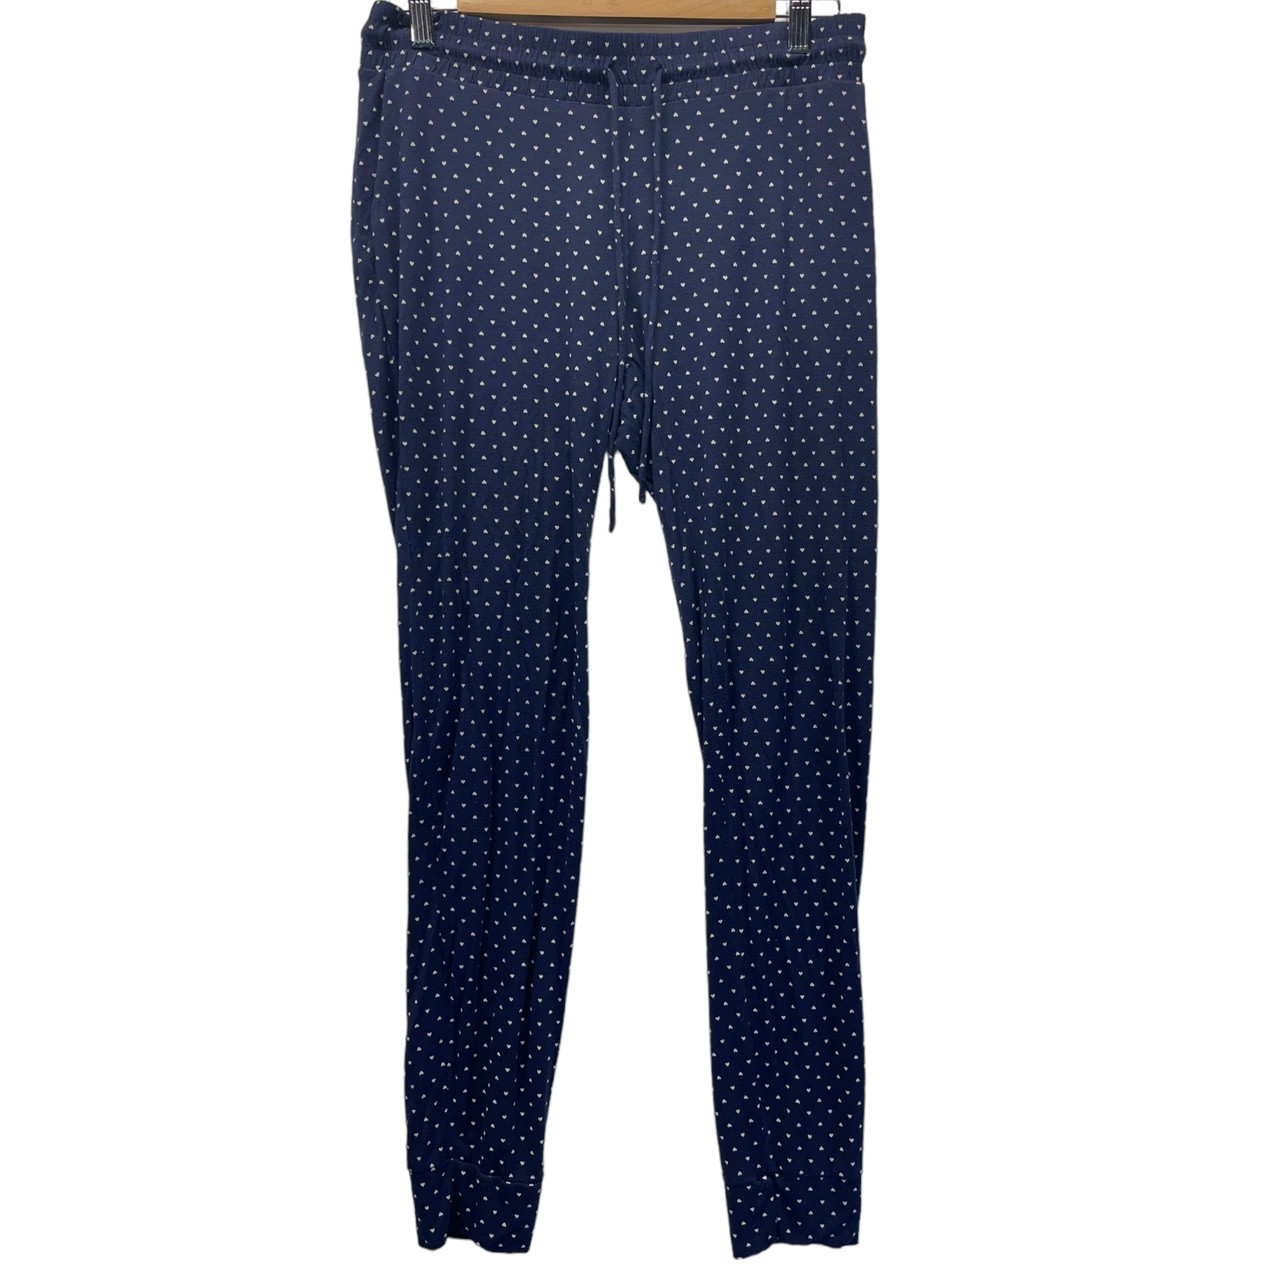 Gap Polka Dots Navy Blue Casual Pants Size 16 - 80% off